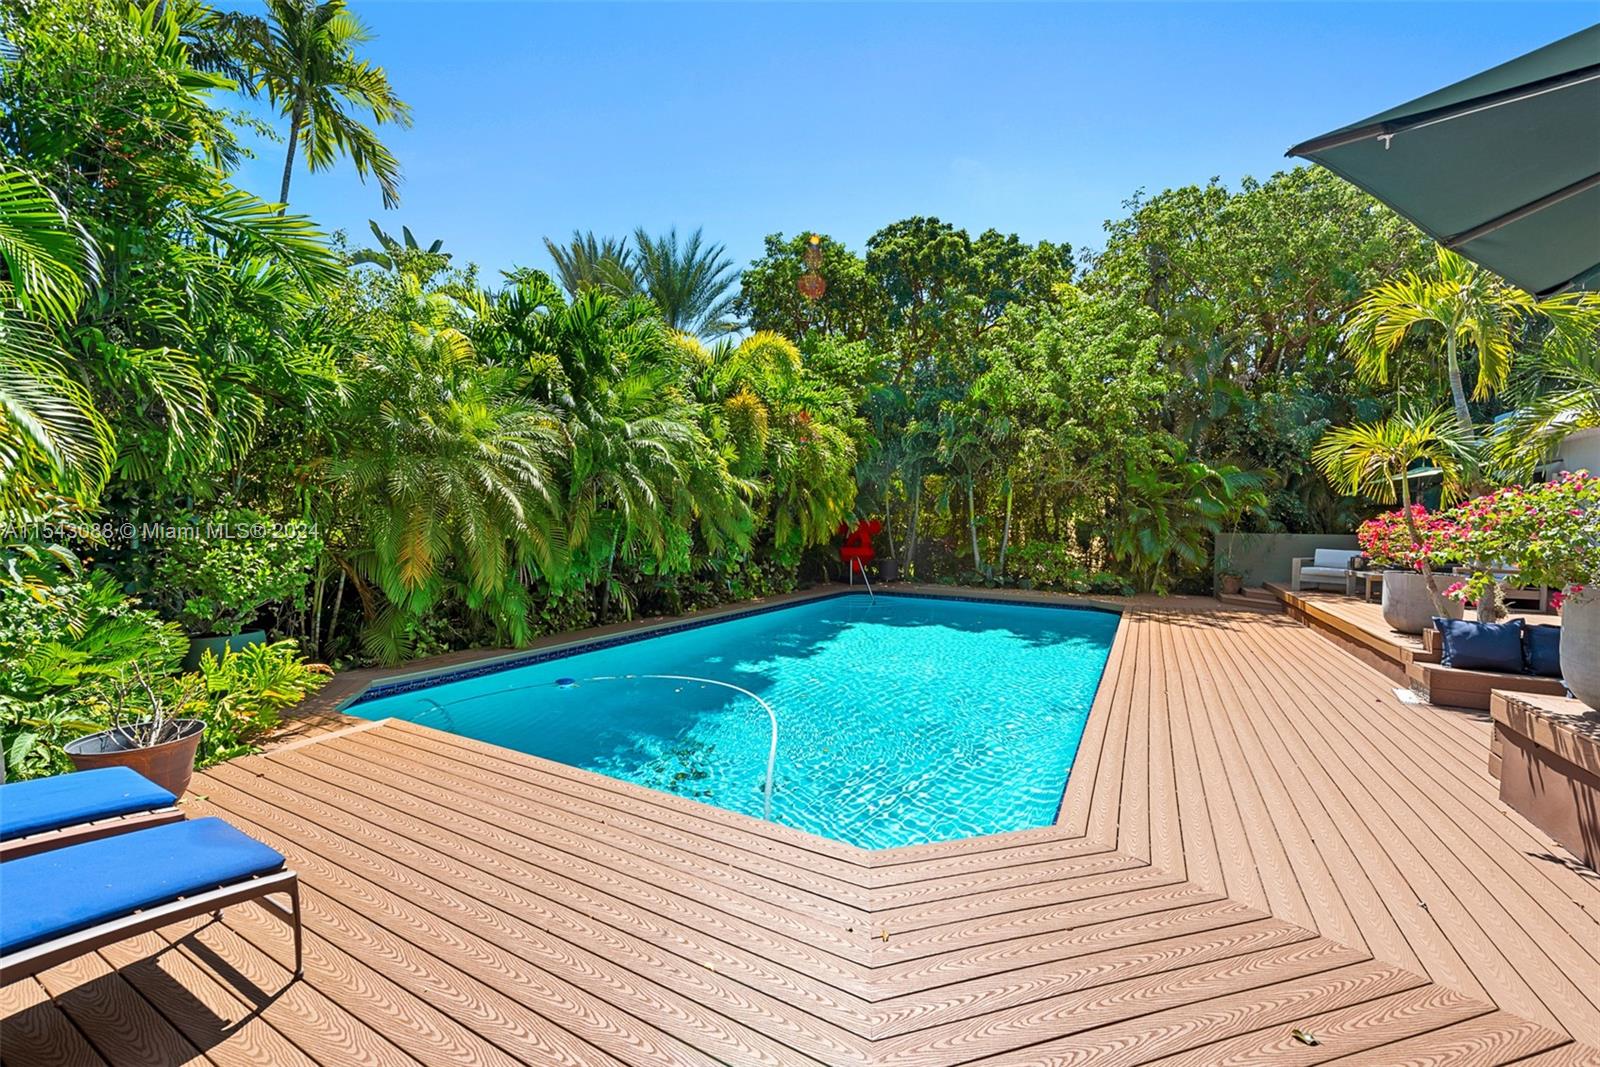 Rental Property at 2815 Regatta Ave, Miami Beach, Miami-Dade County, Florida - Bedrooms: 3 
Bathrooms: 4  - $24,000 MO.